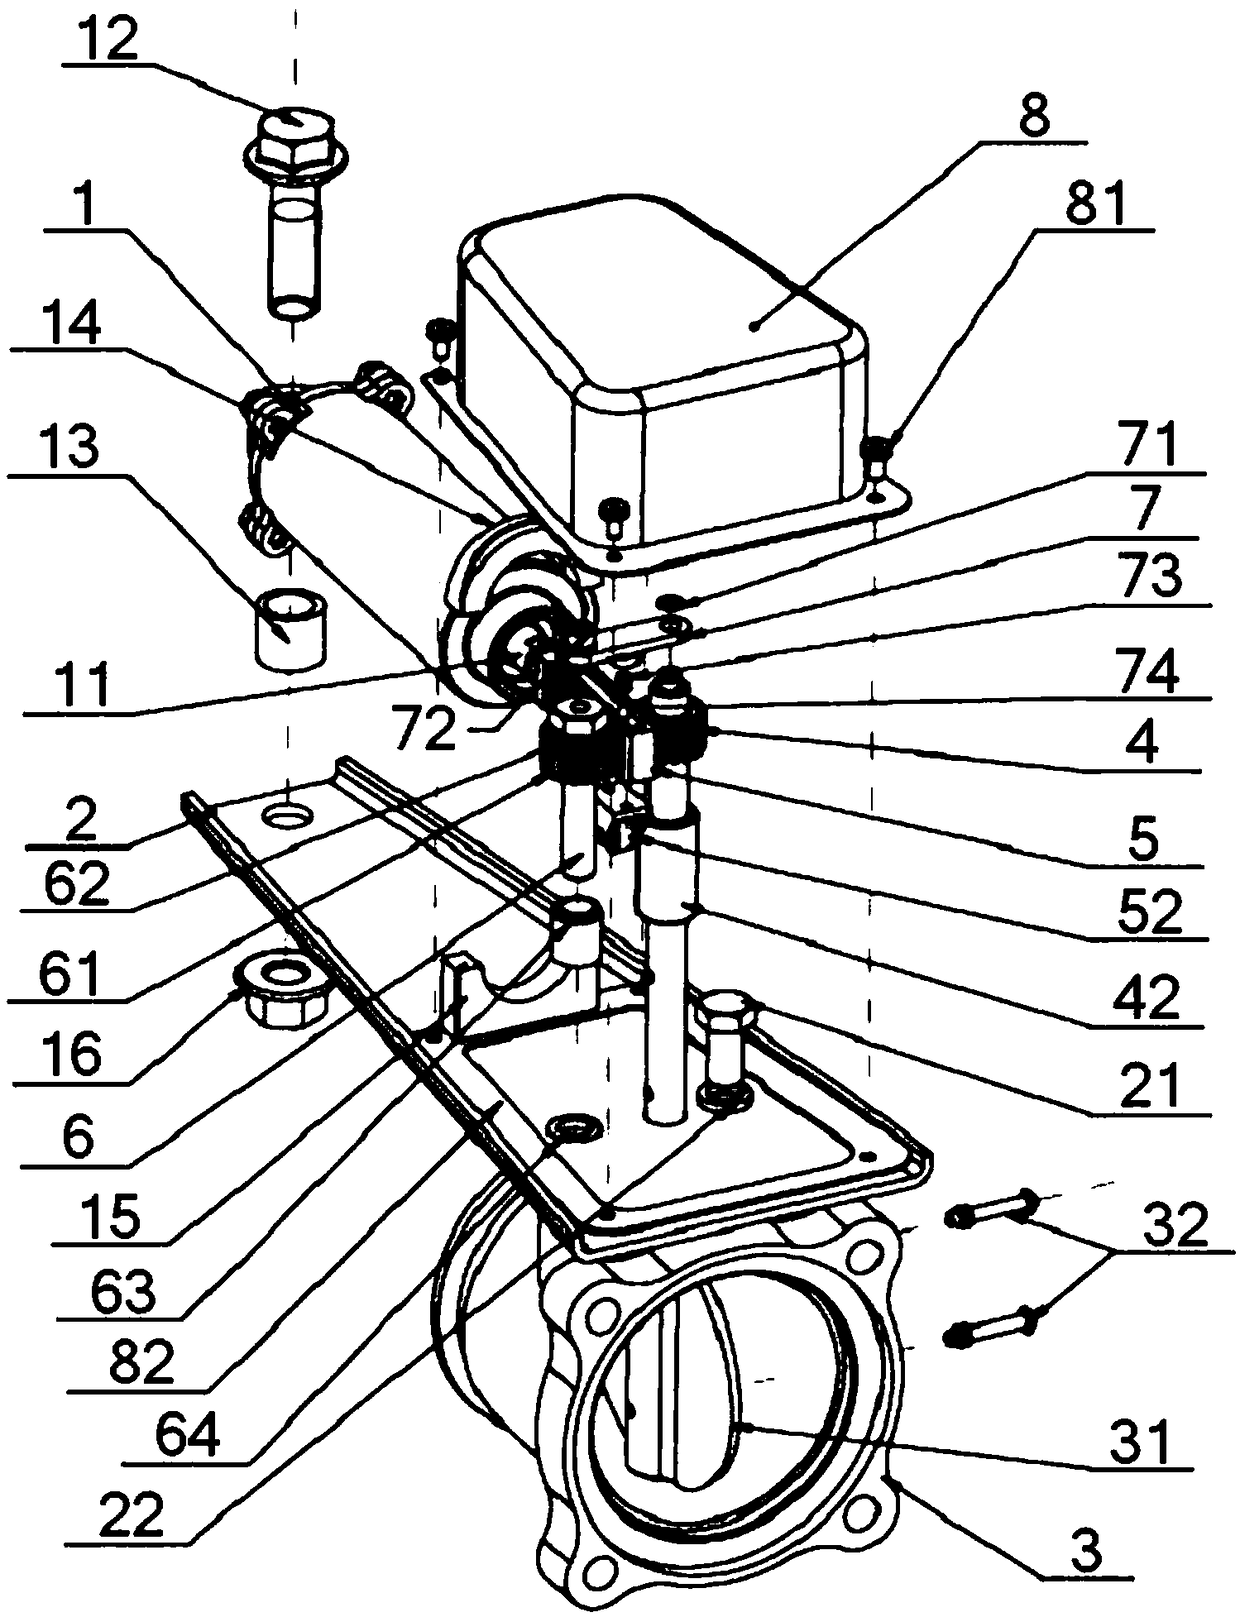 Control mechanism of exhaust brake valve